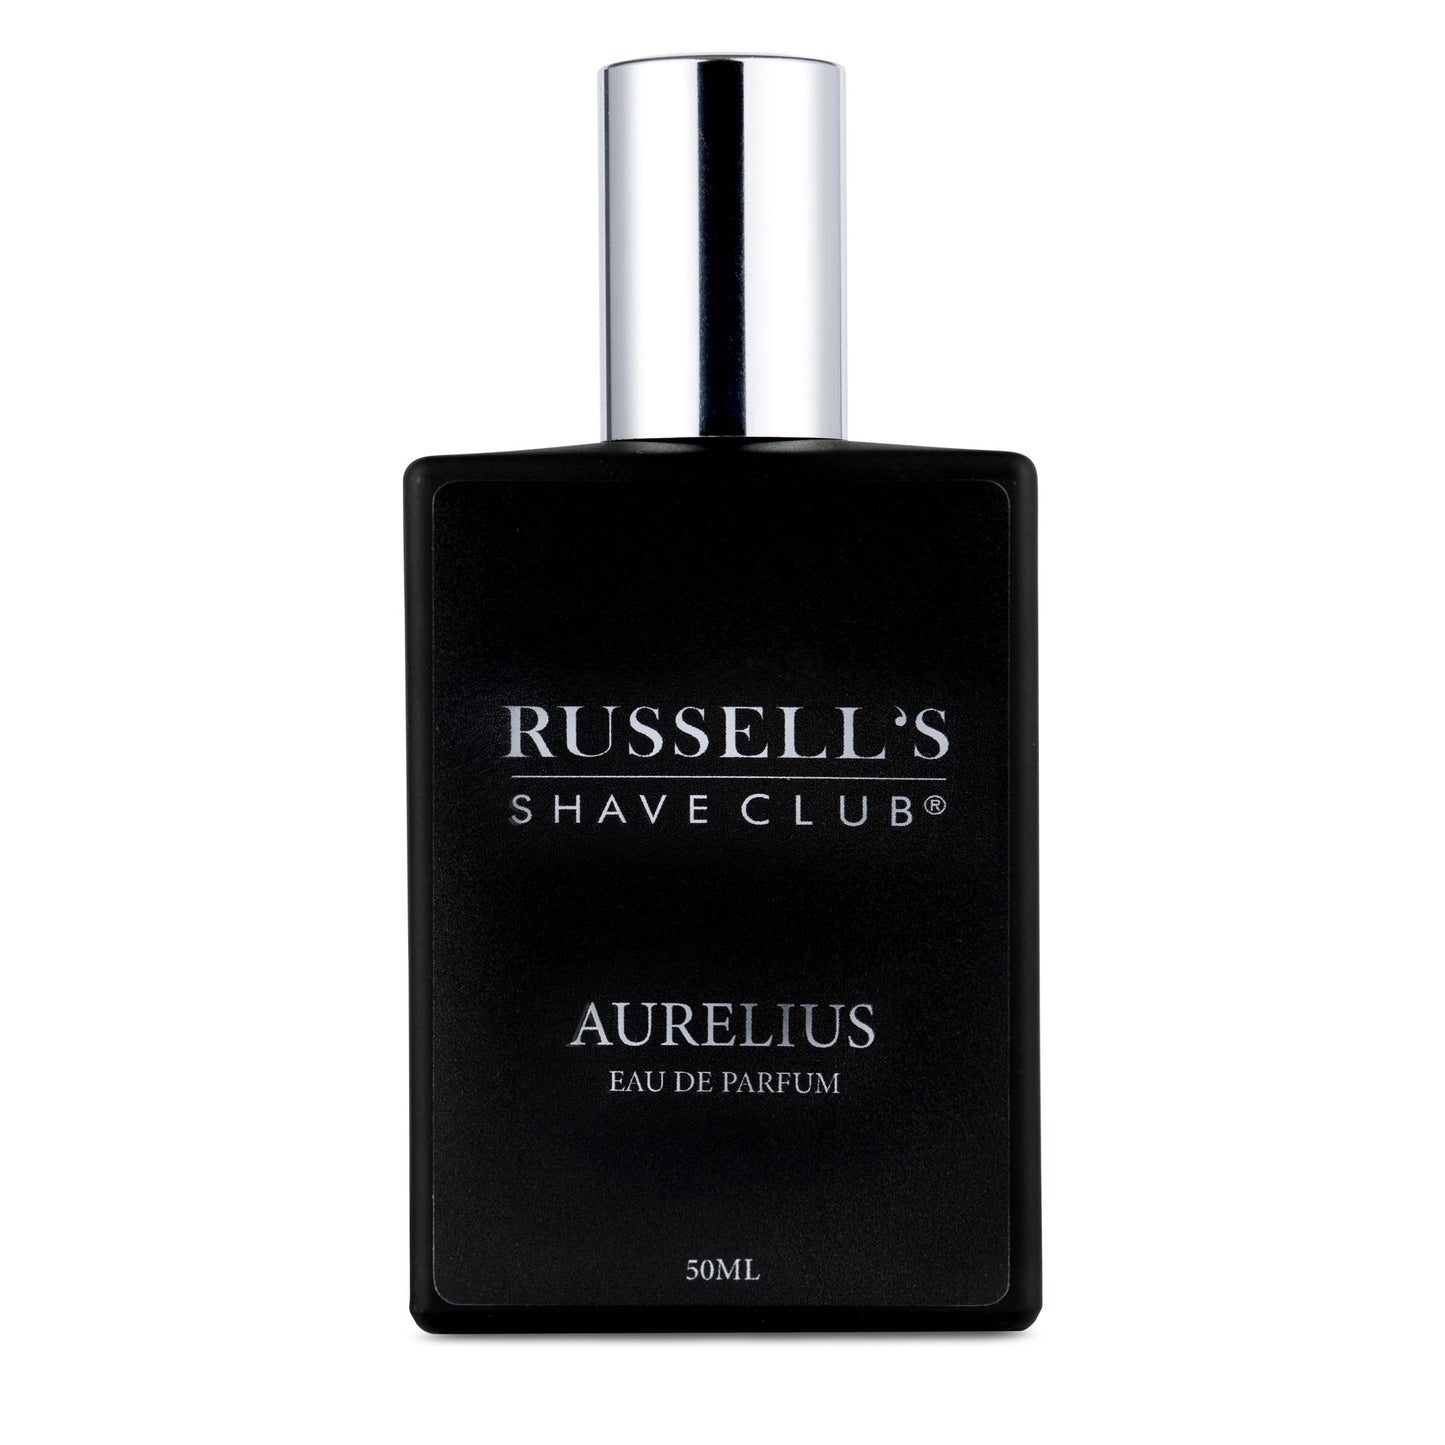 AURELIUS Eau de Parfum - Inspired By OMBRE NOMADE